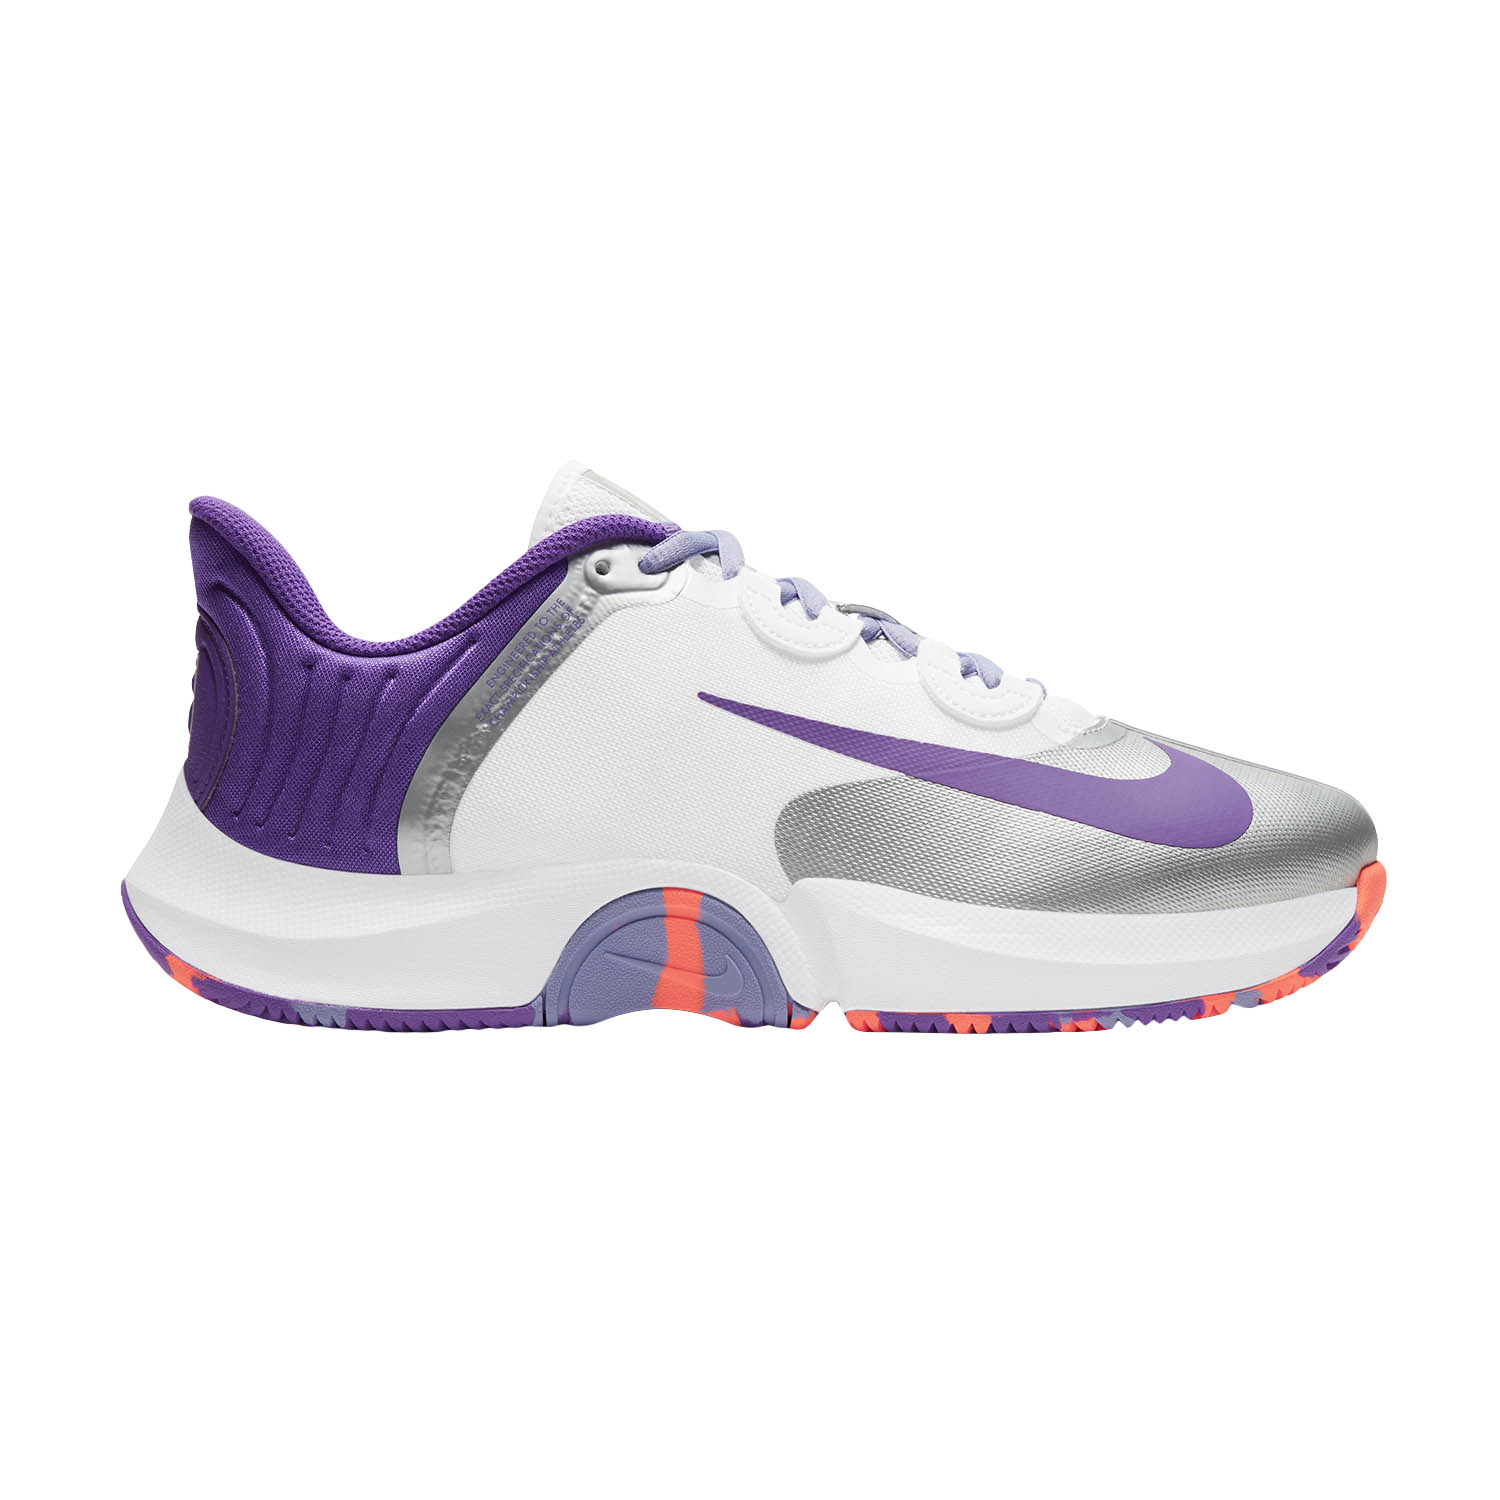 air zoom tennis shoes